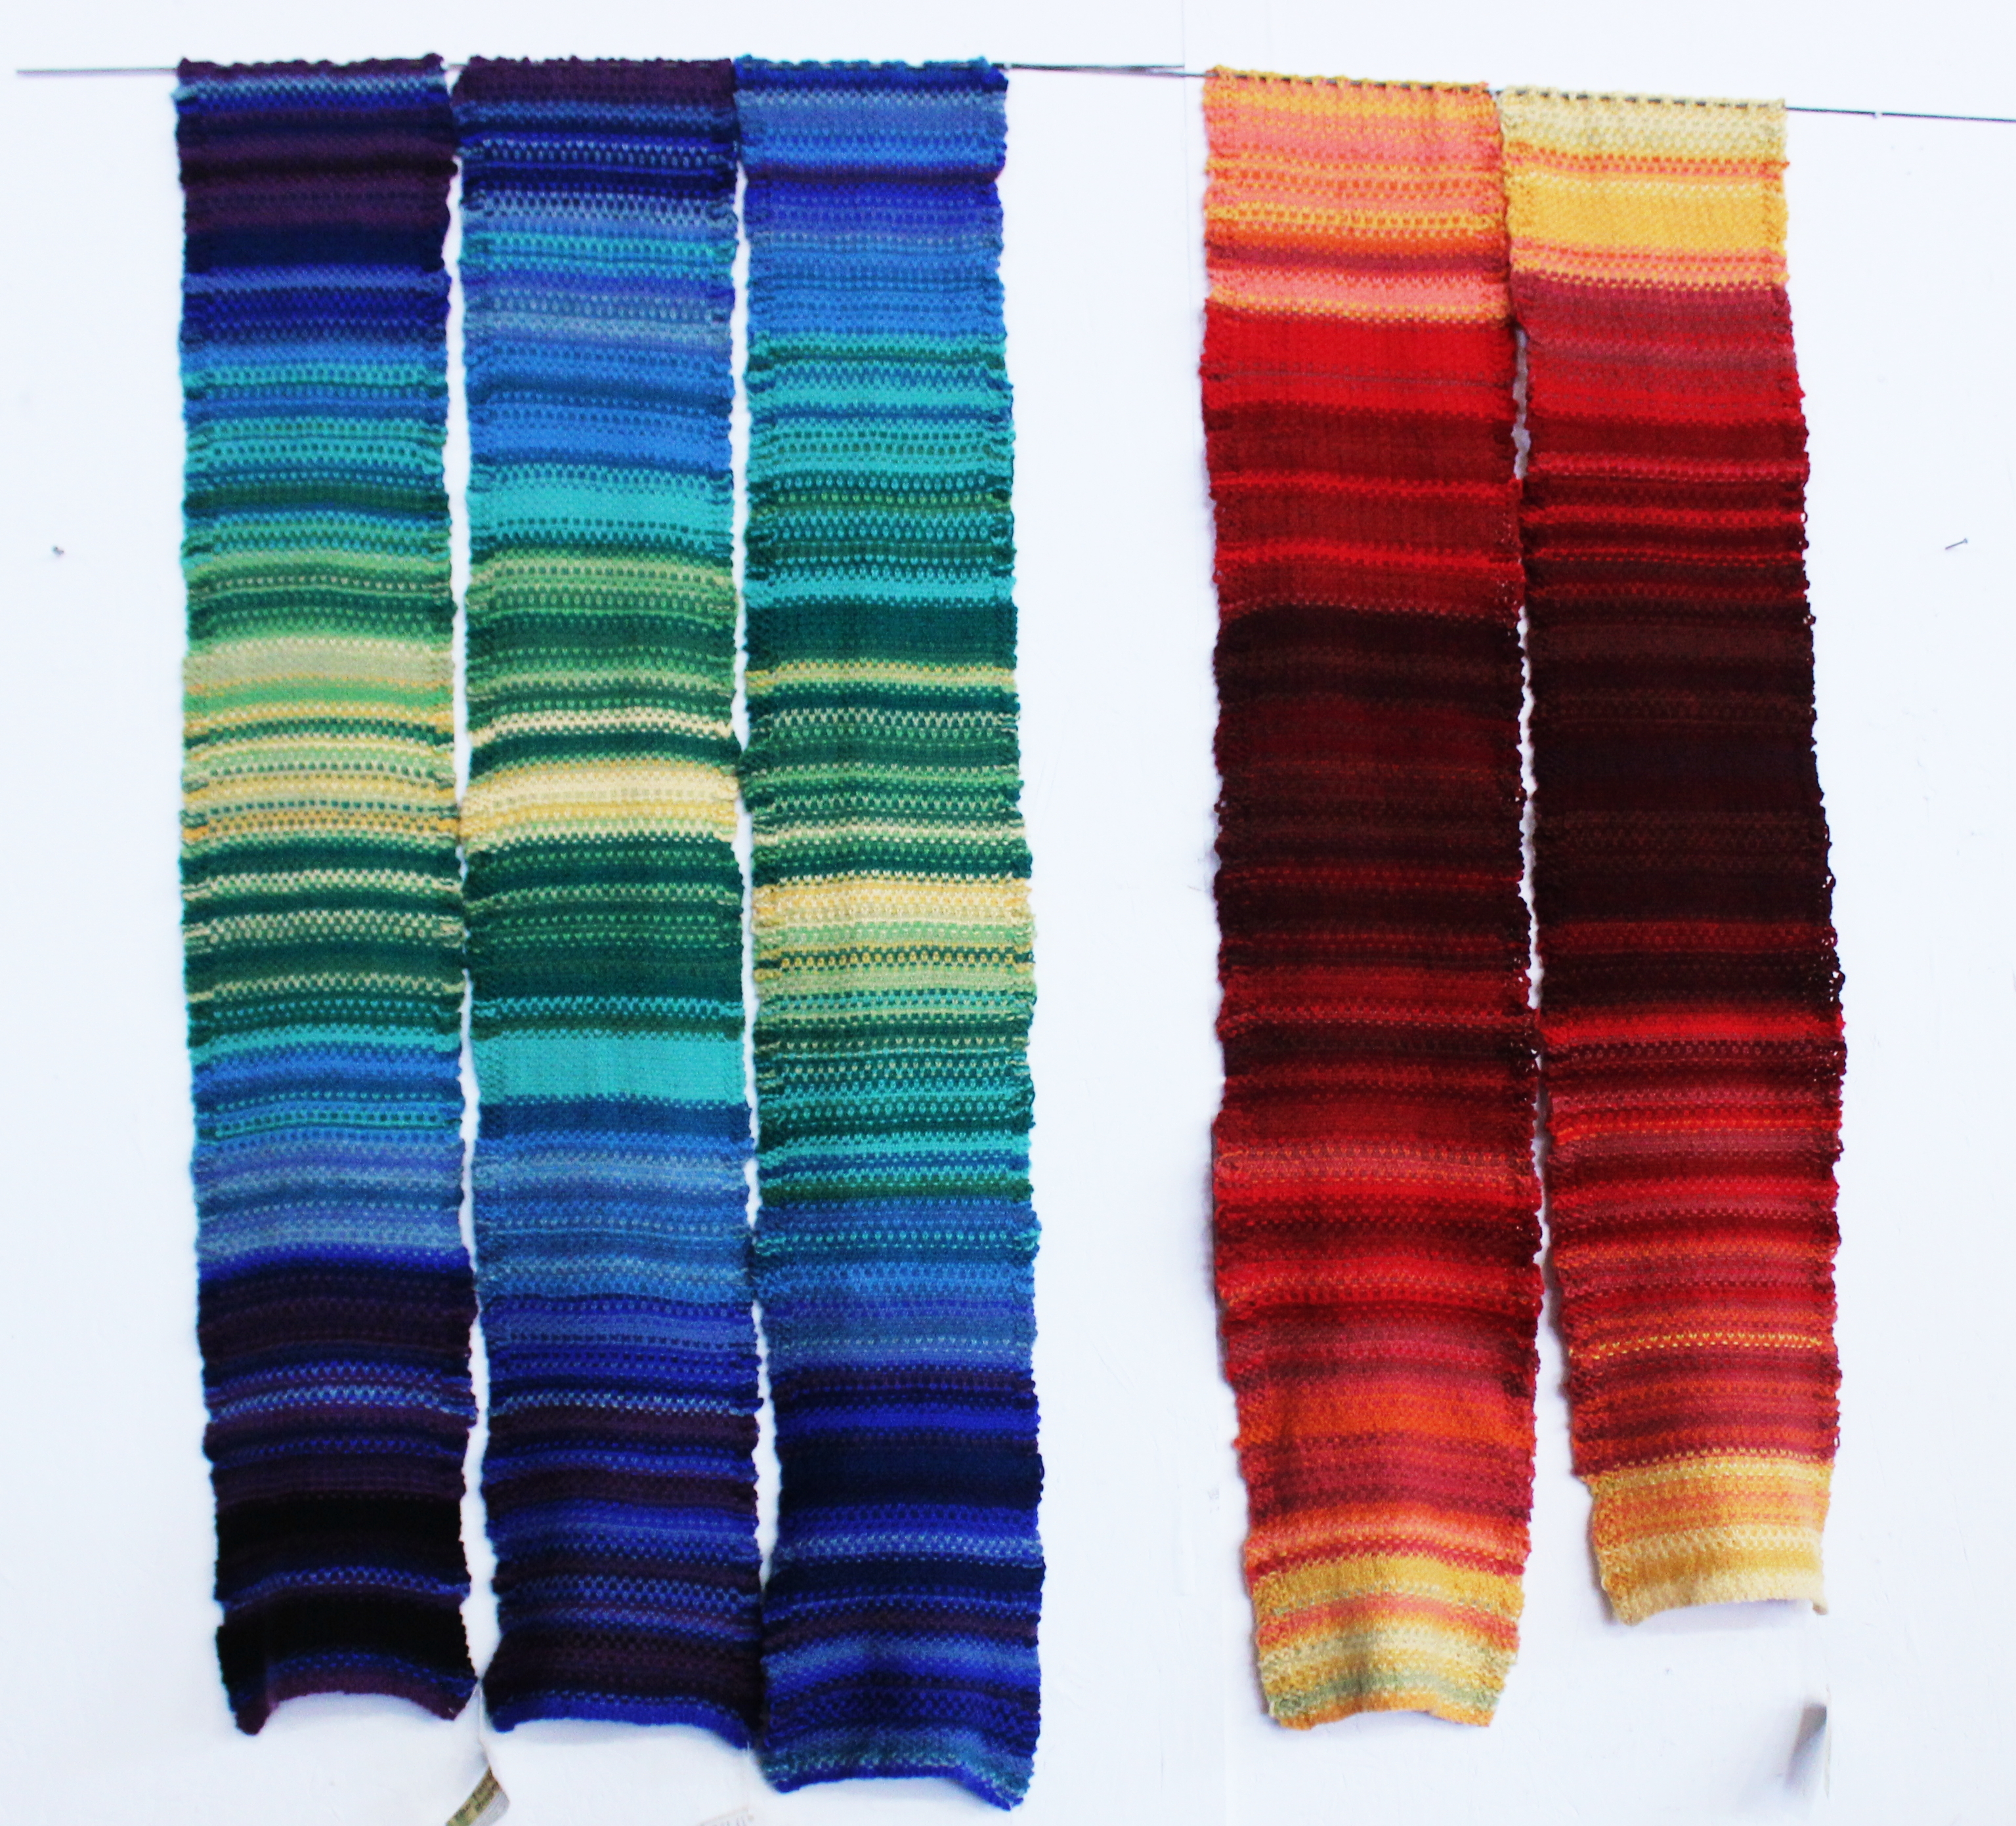 Stitch marker (crochet) - Wikipedia